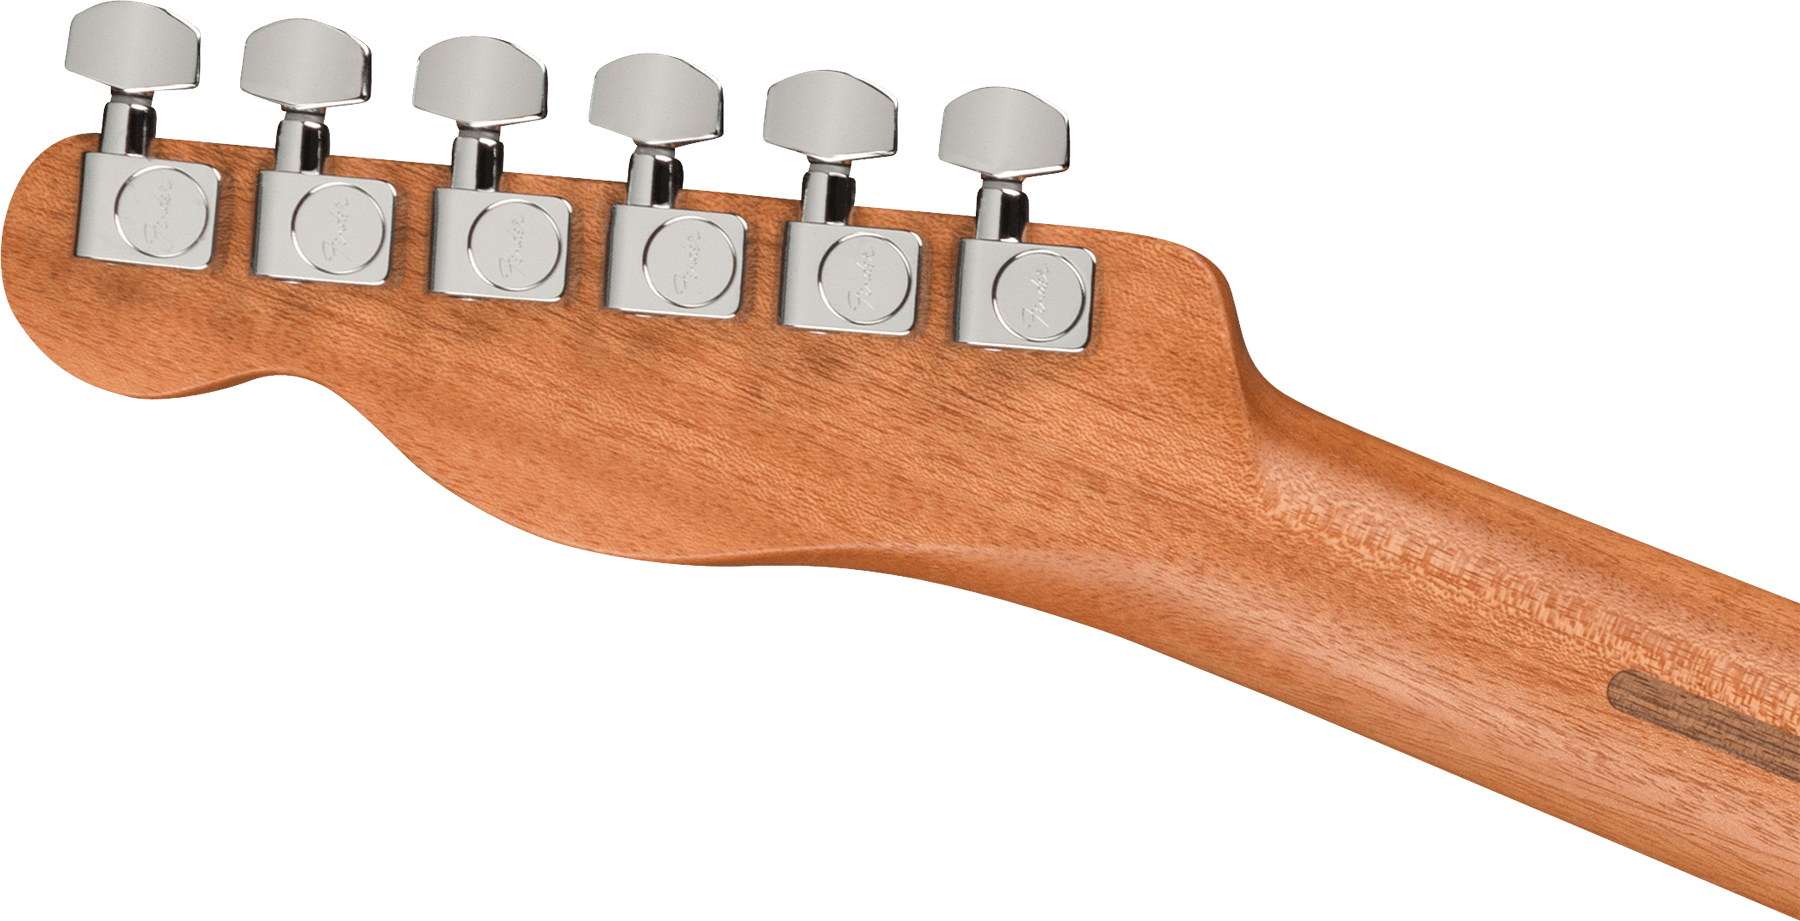 Fender Acoustasonic Tele Player Mex Epicea Acajou Rw - Shadow Burst - Elektroakustische Gitarre - Variation 3